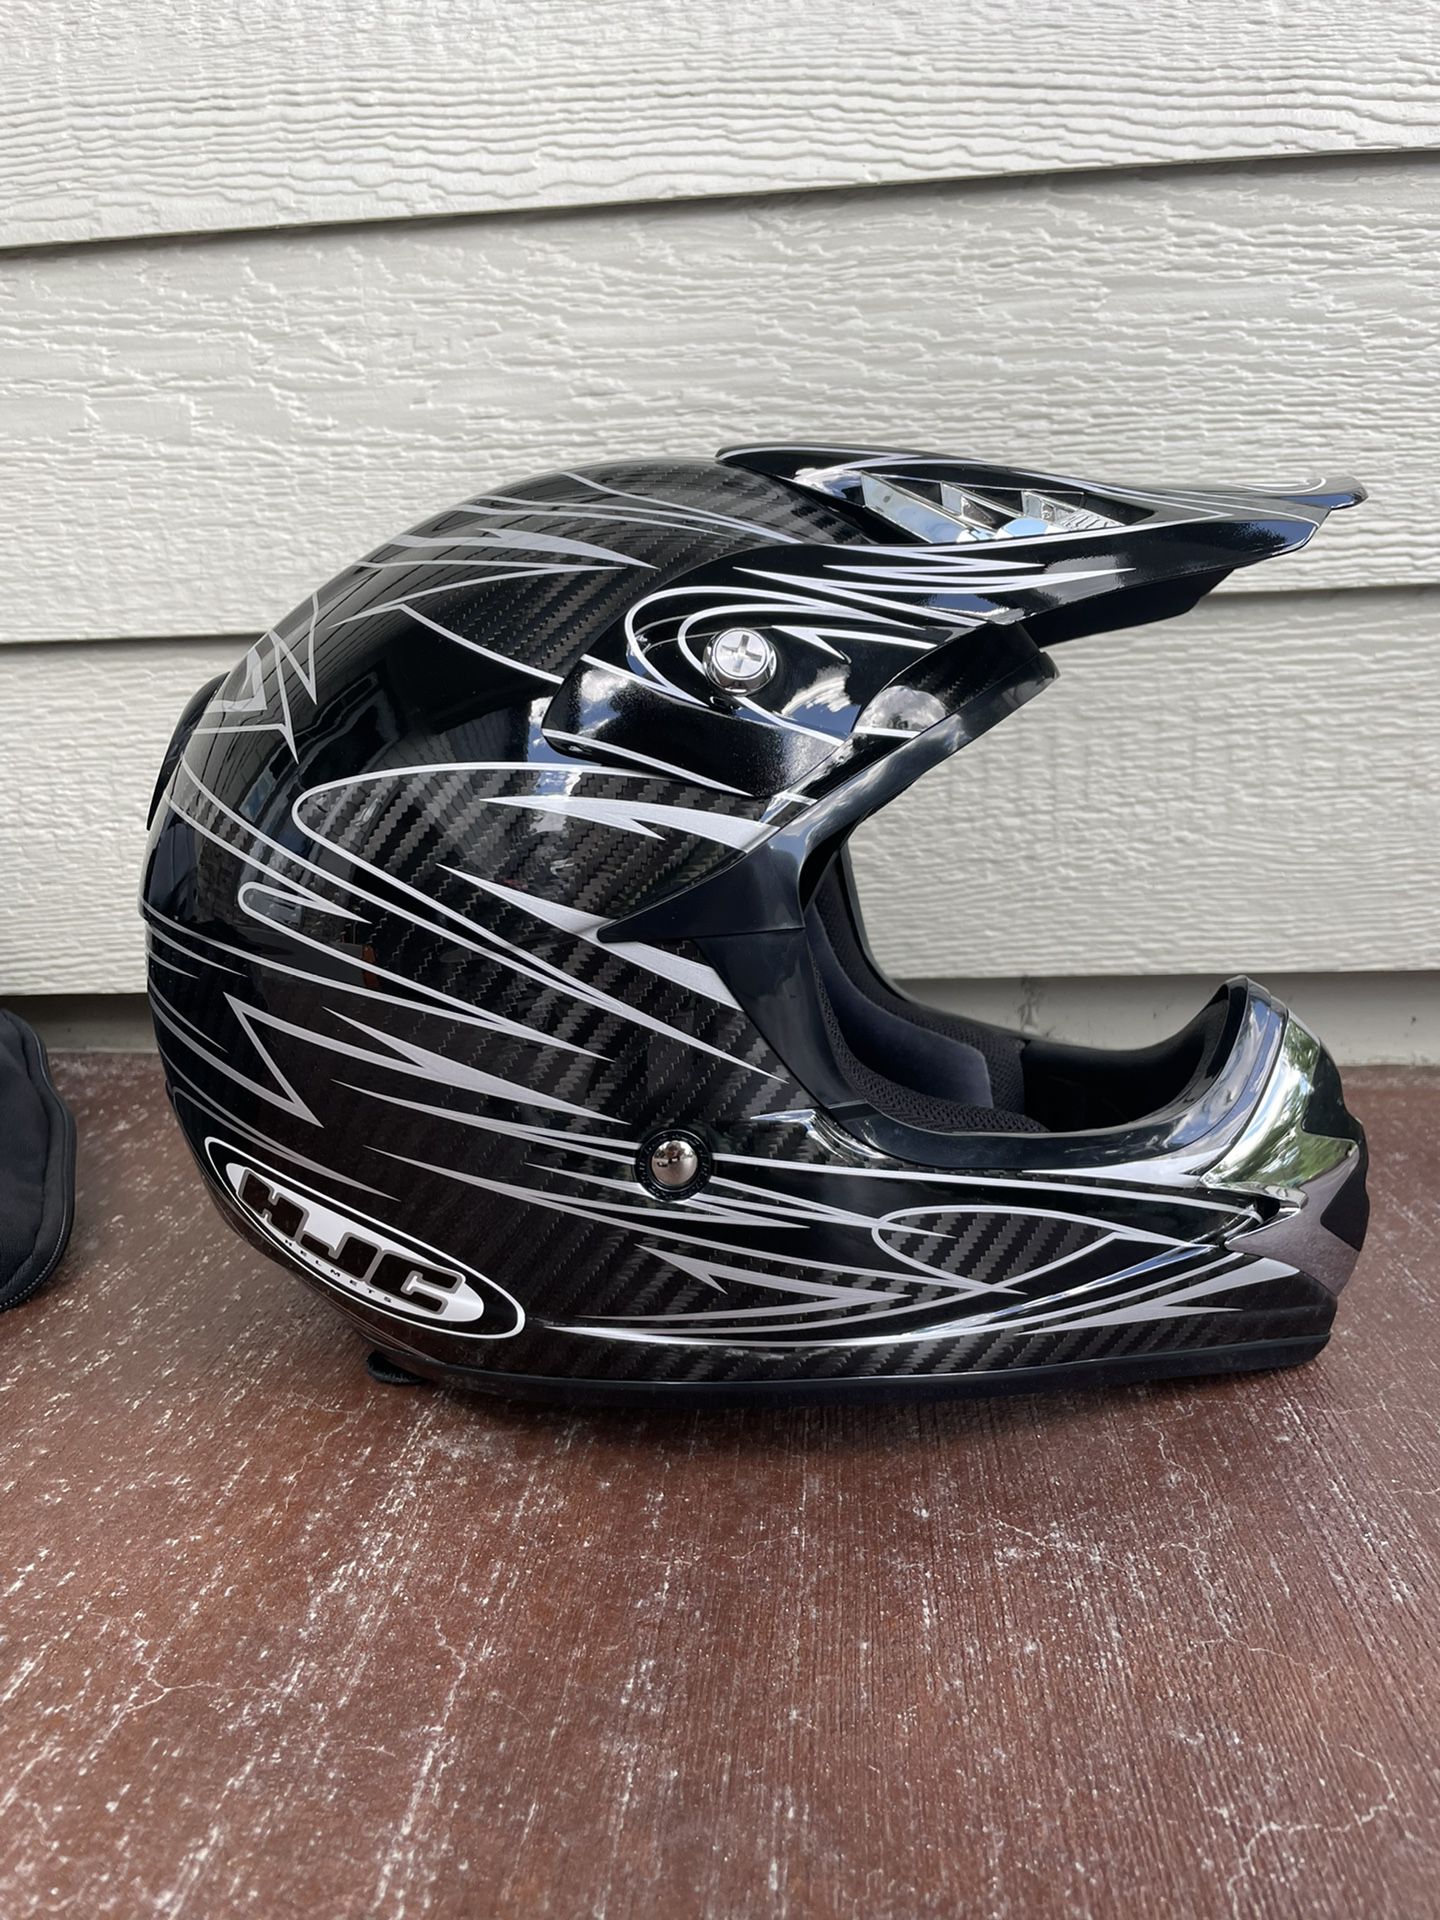 HJC Carbon Motocross Helmet